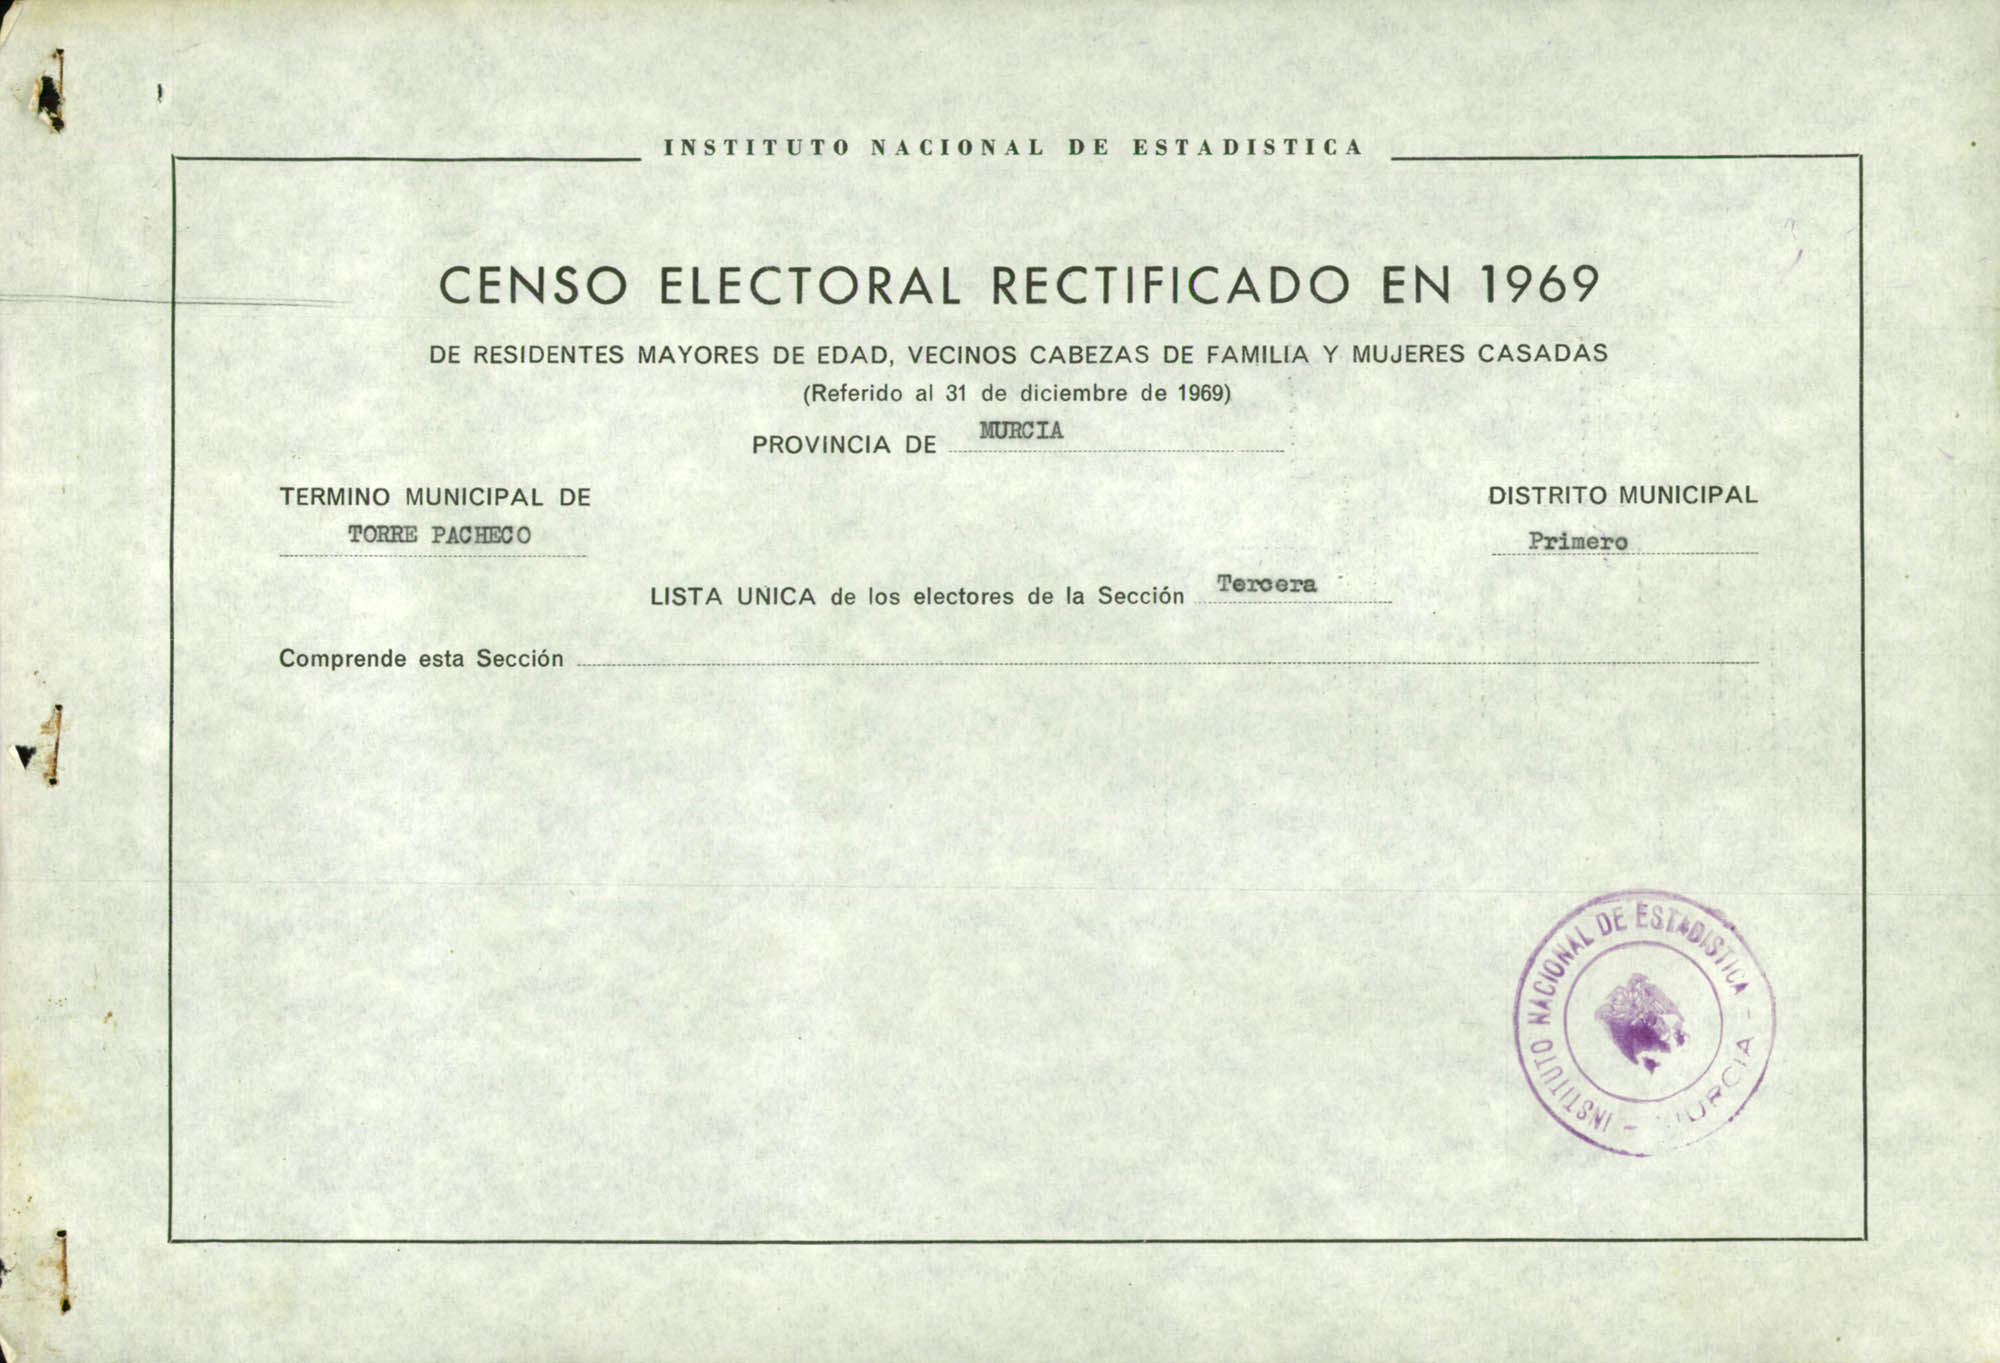 Censo electoral rectificado en 1969: listas definitivas de Torre Pacheco, Distrito 1º, sección 3ª.